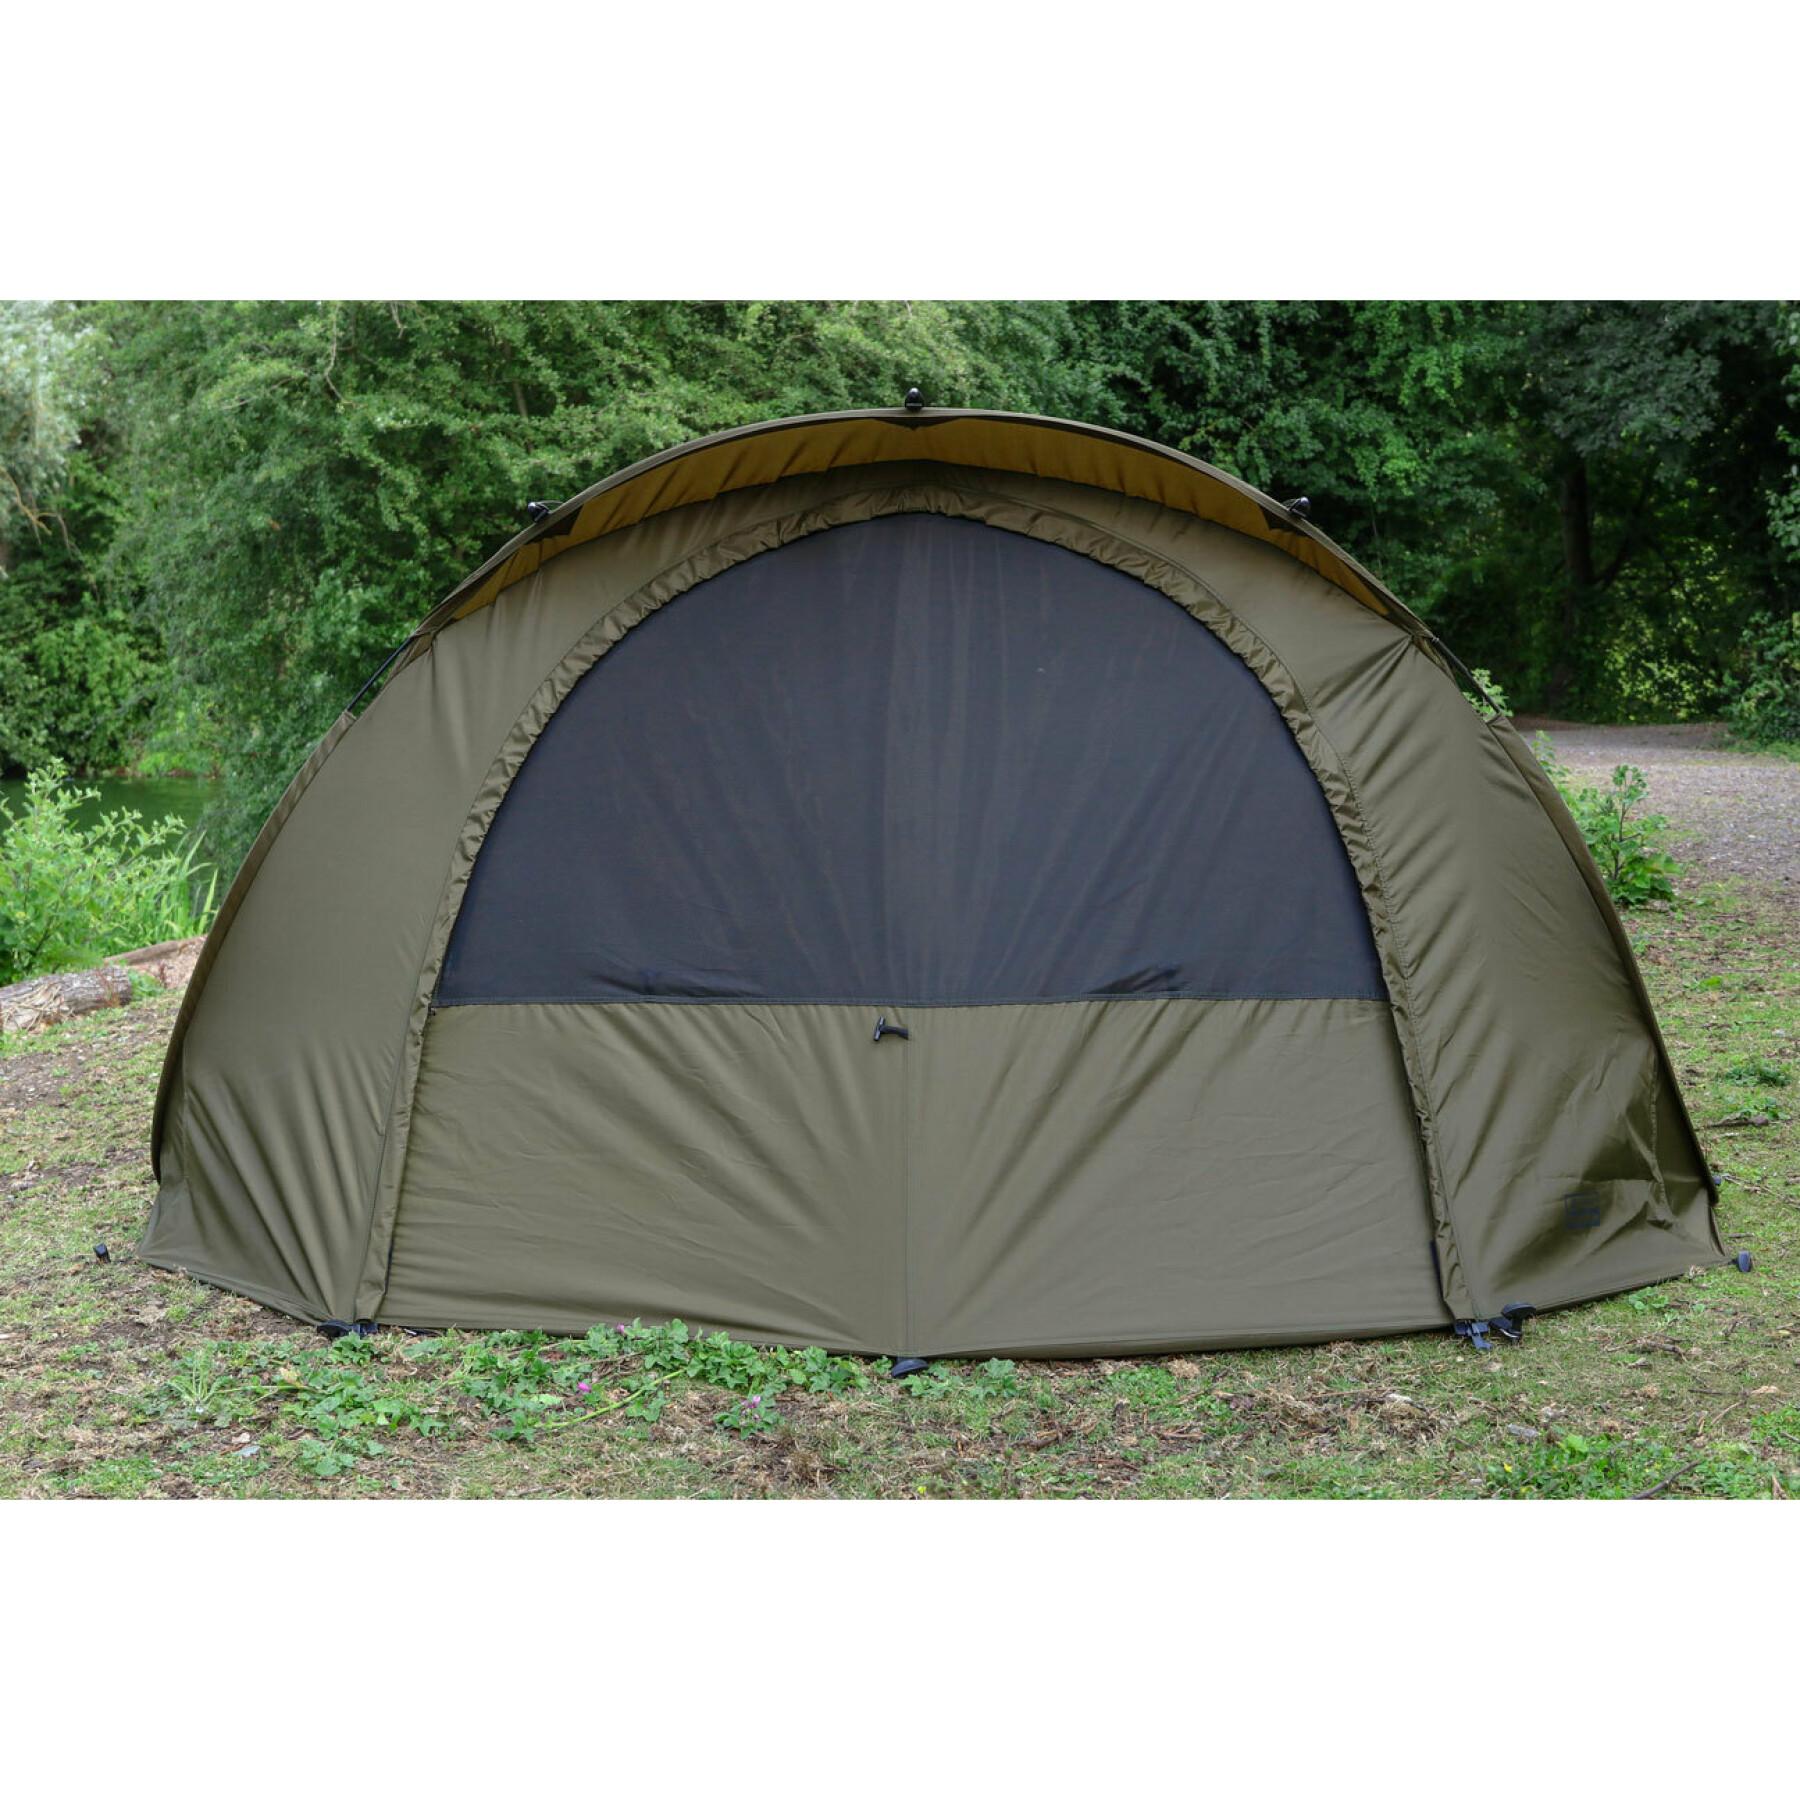 Easy shelter tent Fox